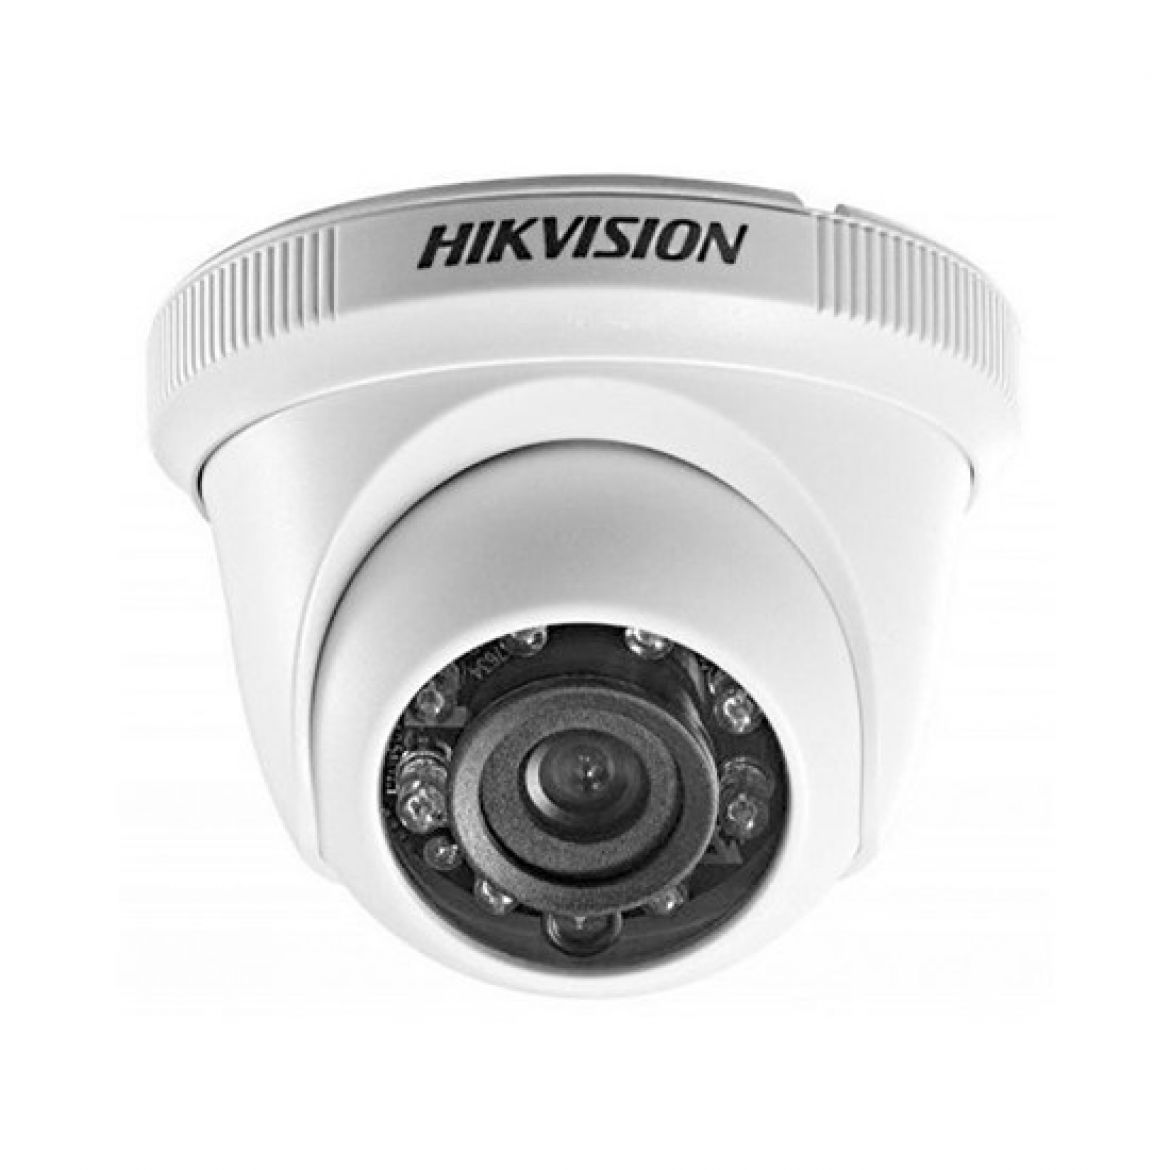 Hikvision DS-2CE56D0T-IRPF 2MP